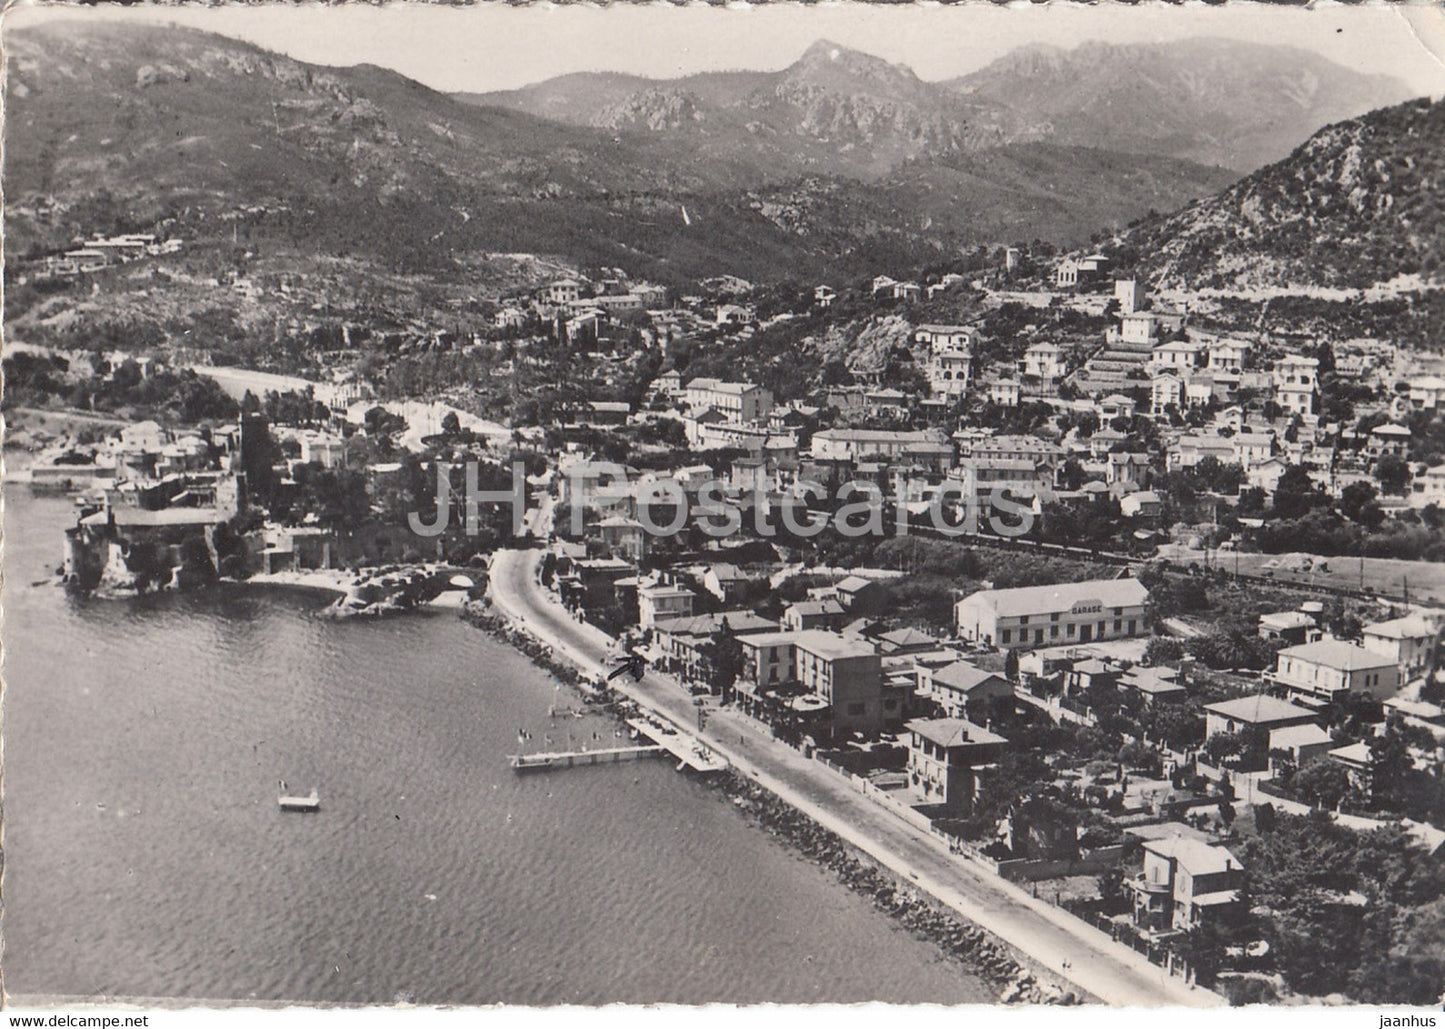 La Napoule Plage - Cote d'Azur - old postcard - 1949 - France - used - JH Postcards